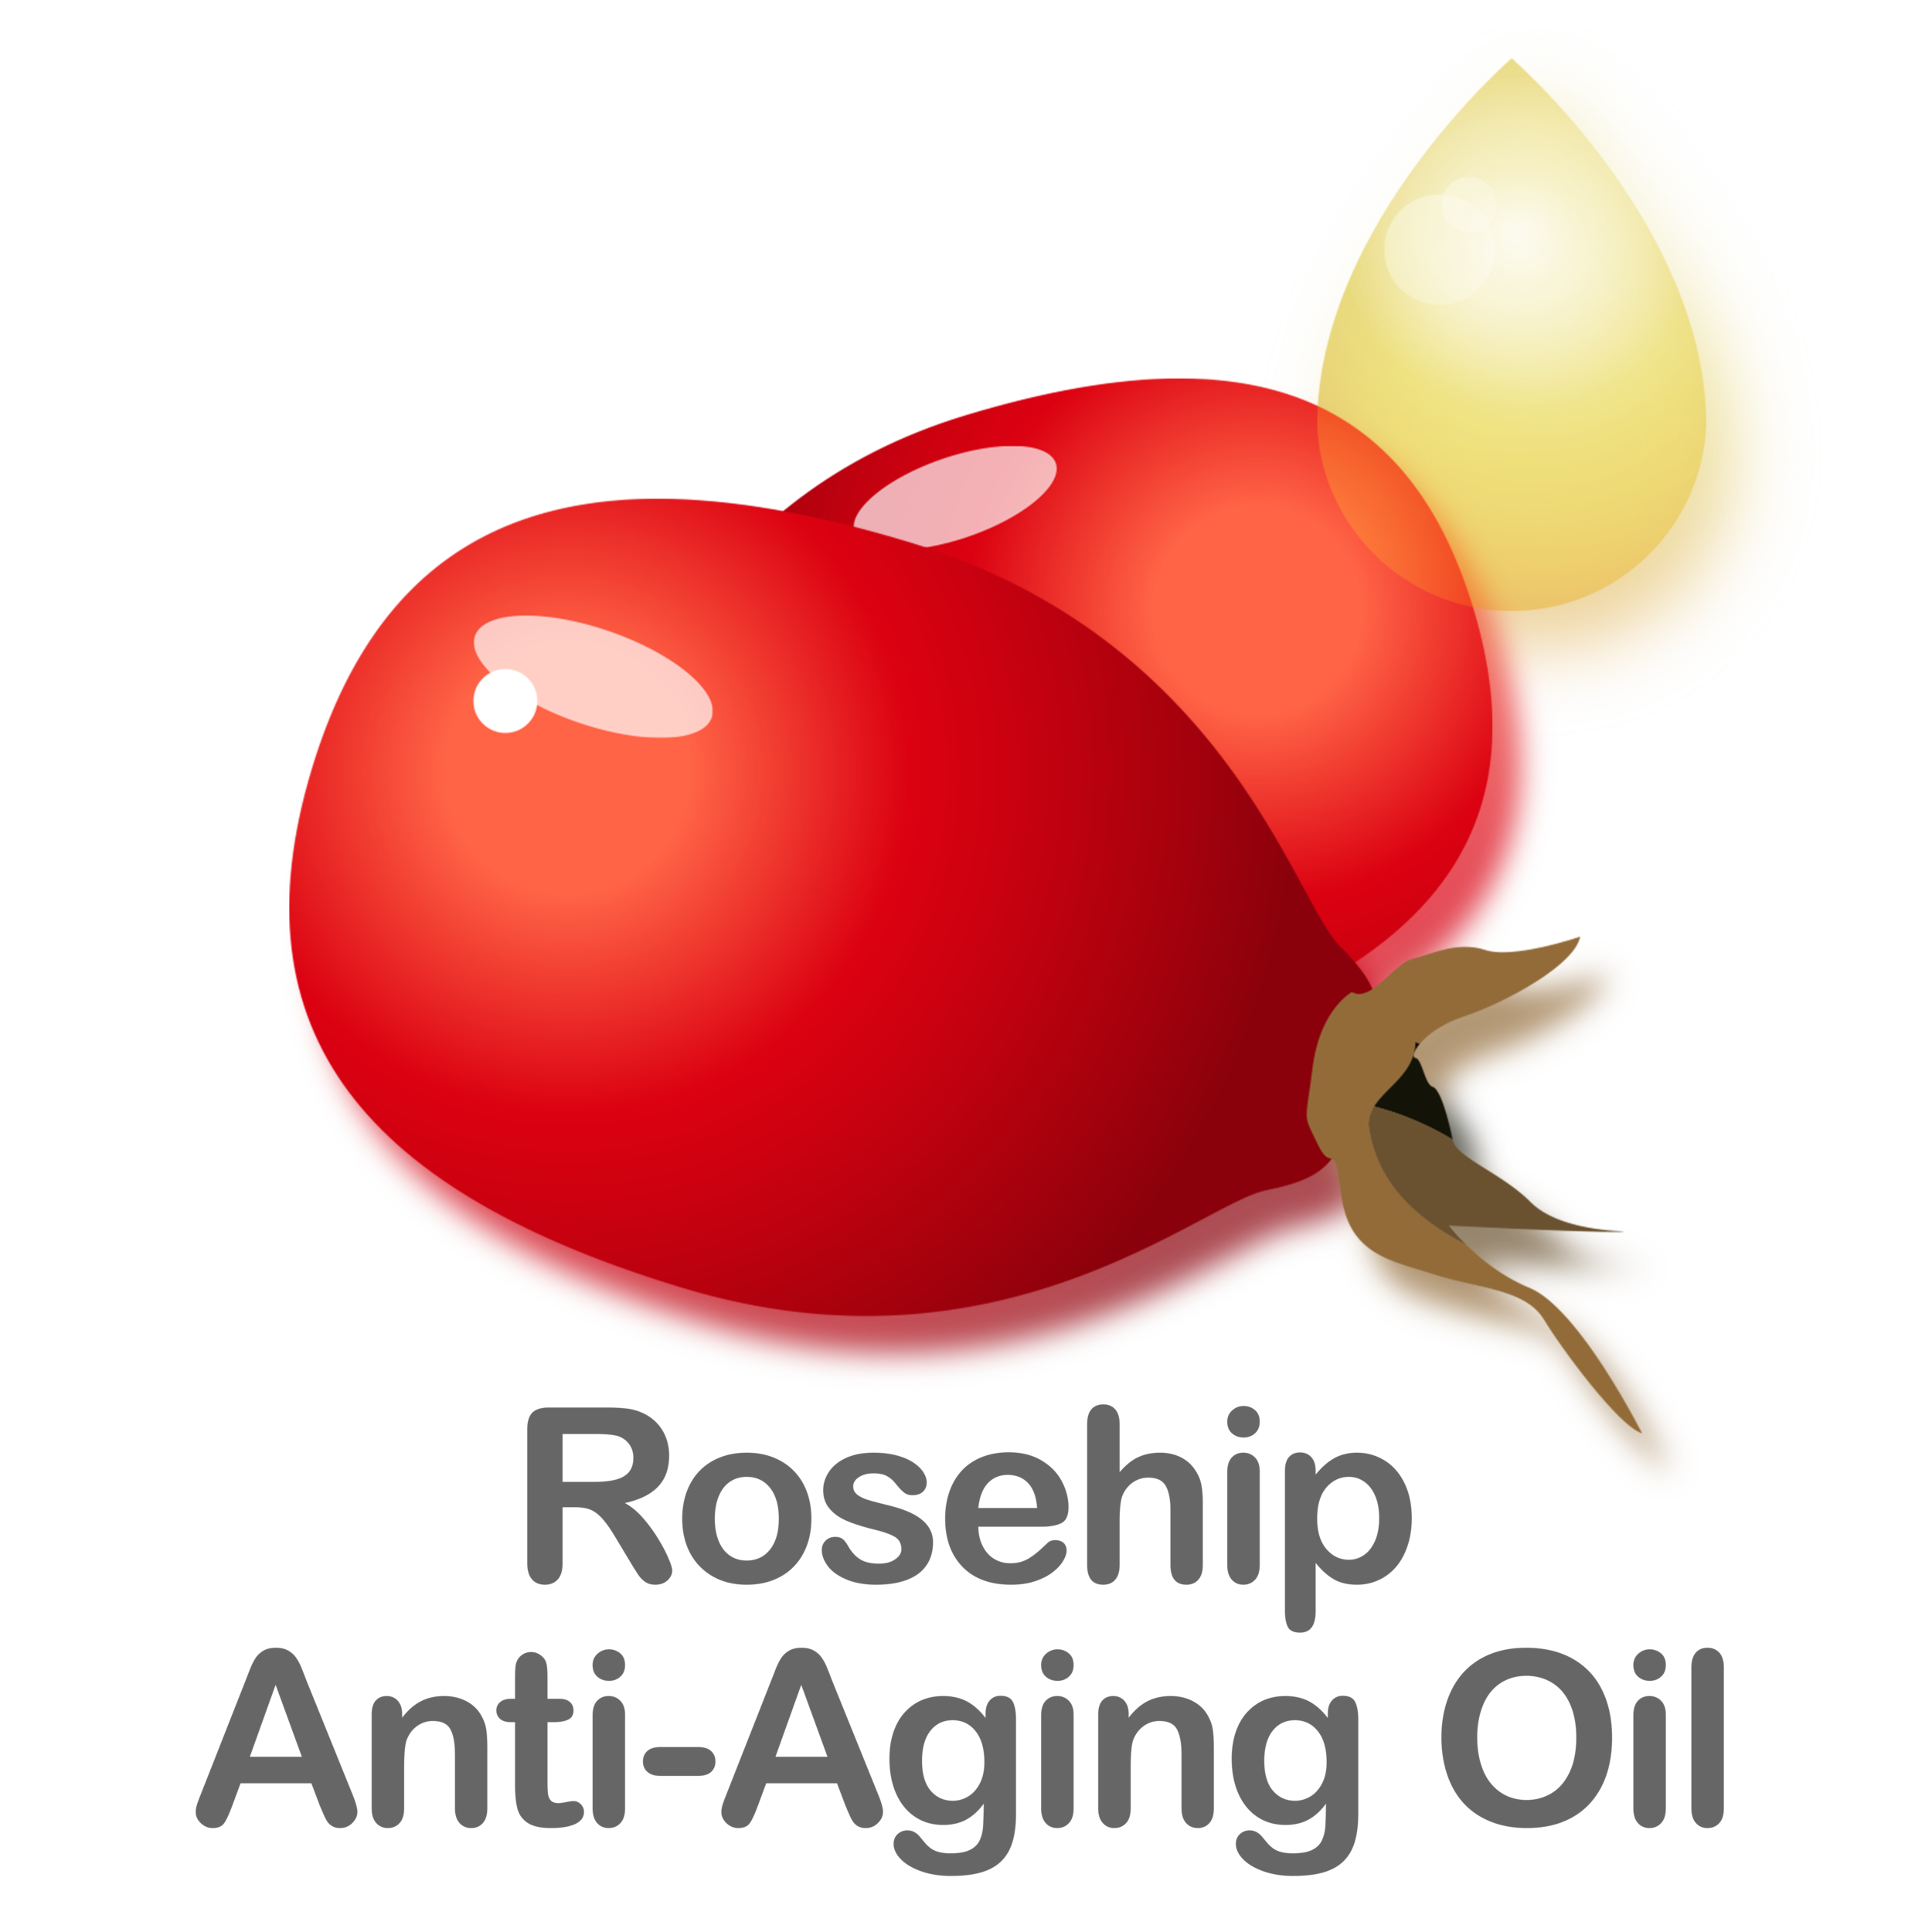 Rosehip Anti-Aging Oil